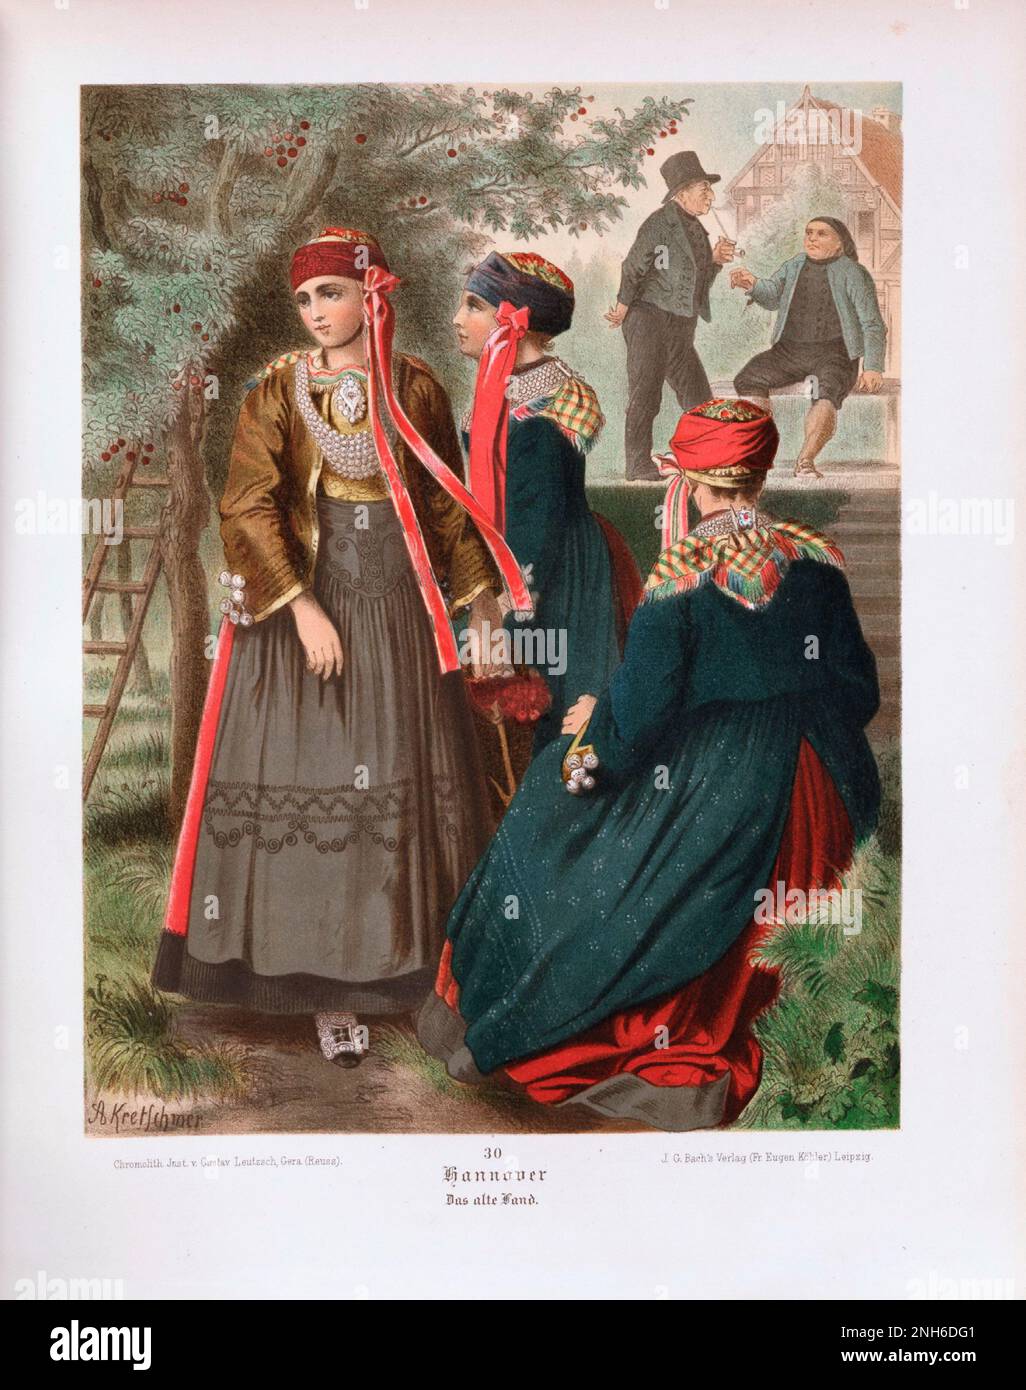 Disfraz folclórico alemán. Hannover (alemán: Hannover), das alte Land. litografía del siglo 19th. Foto de stock